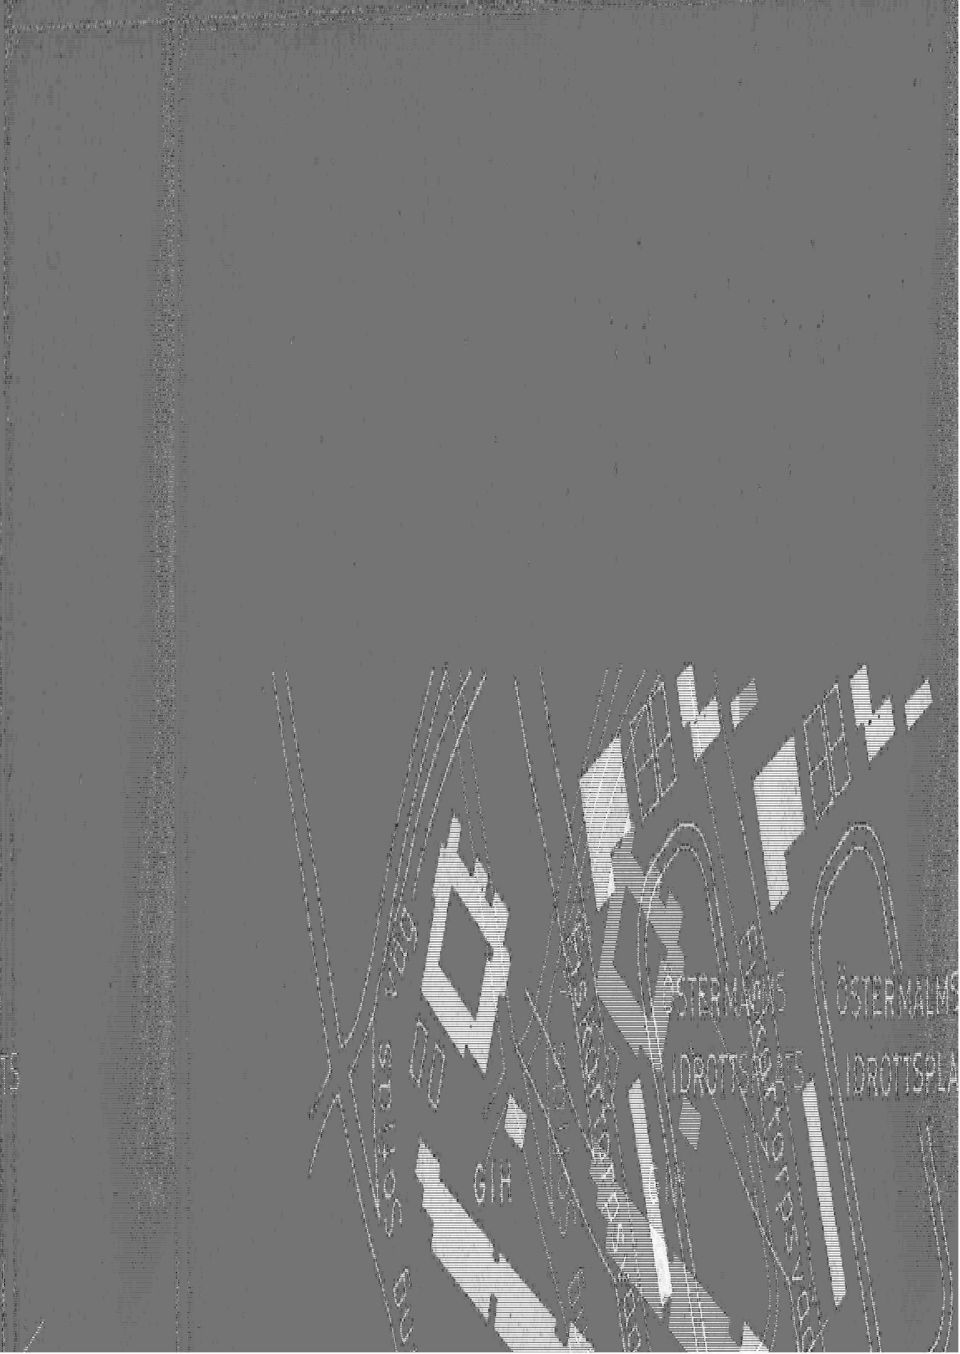 Omslagsfoto : Carl Heideken 1979 Upplaga: 5000 ex Typsnitt: Bookman 9/10 ISBN 91-87088-04-5